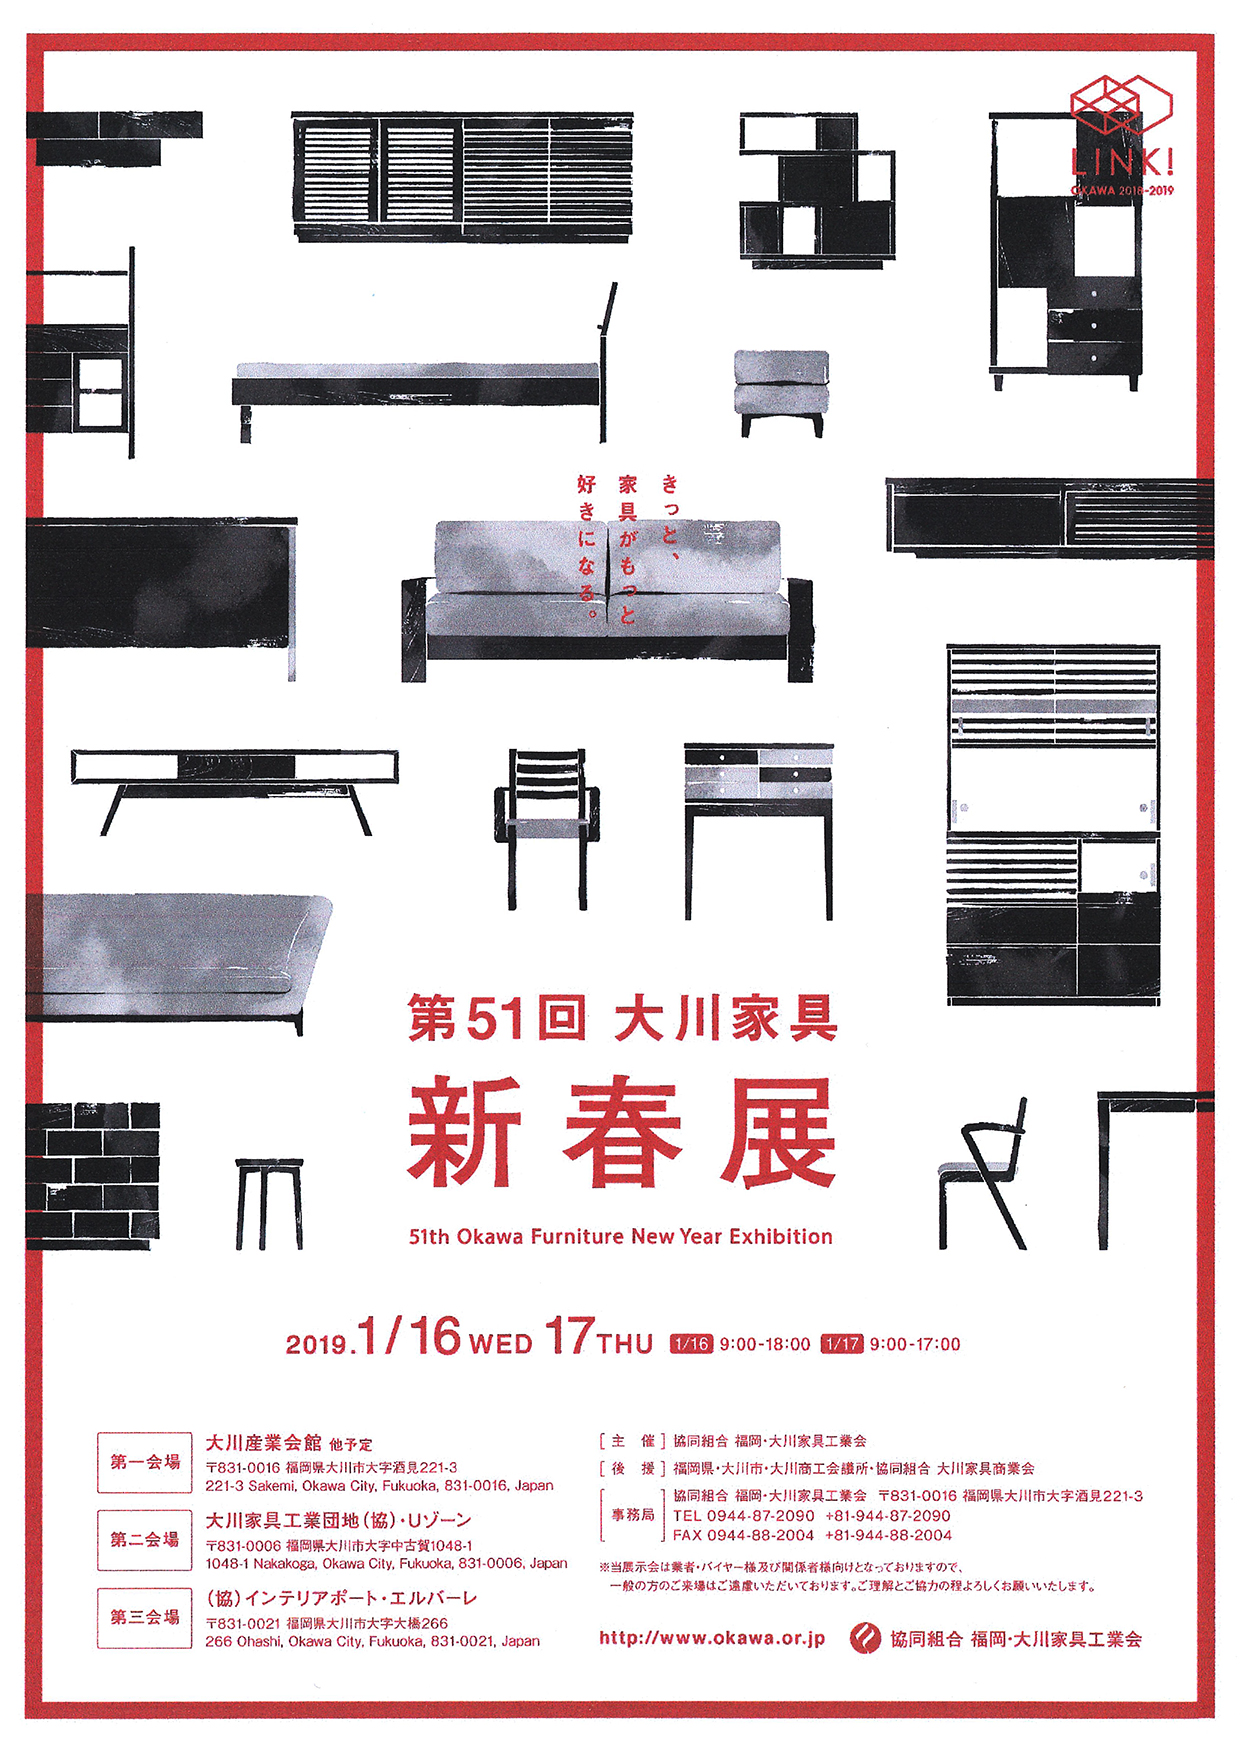 51th Okawa Furniture New Year Exhibition